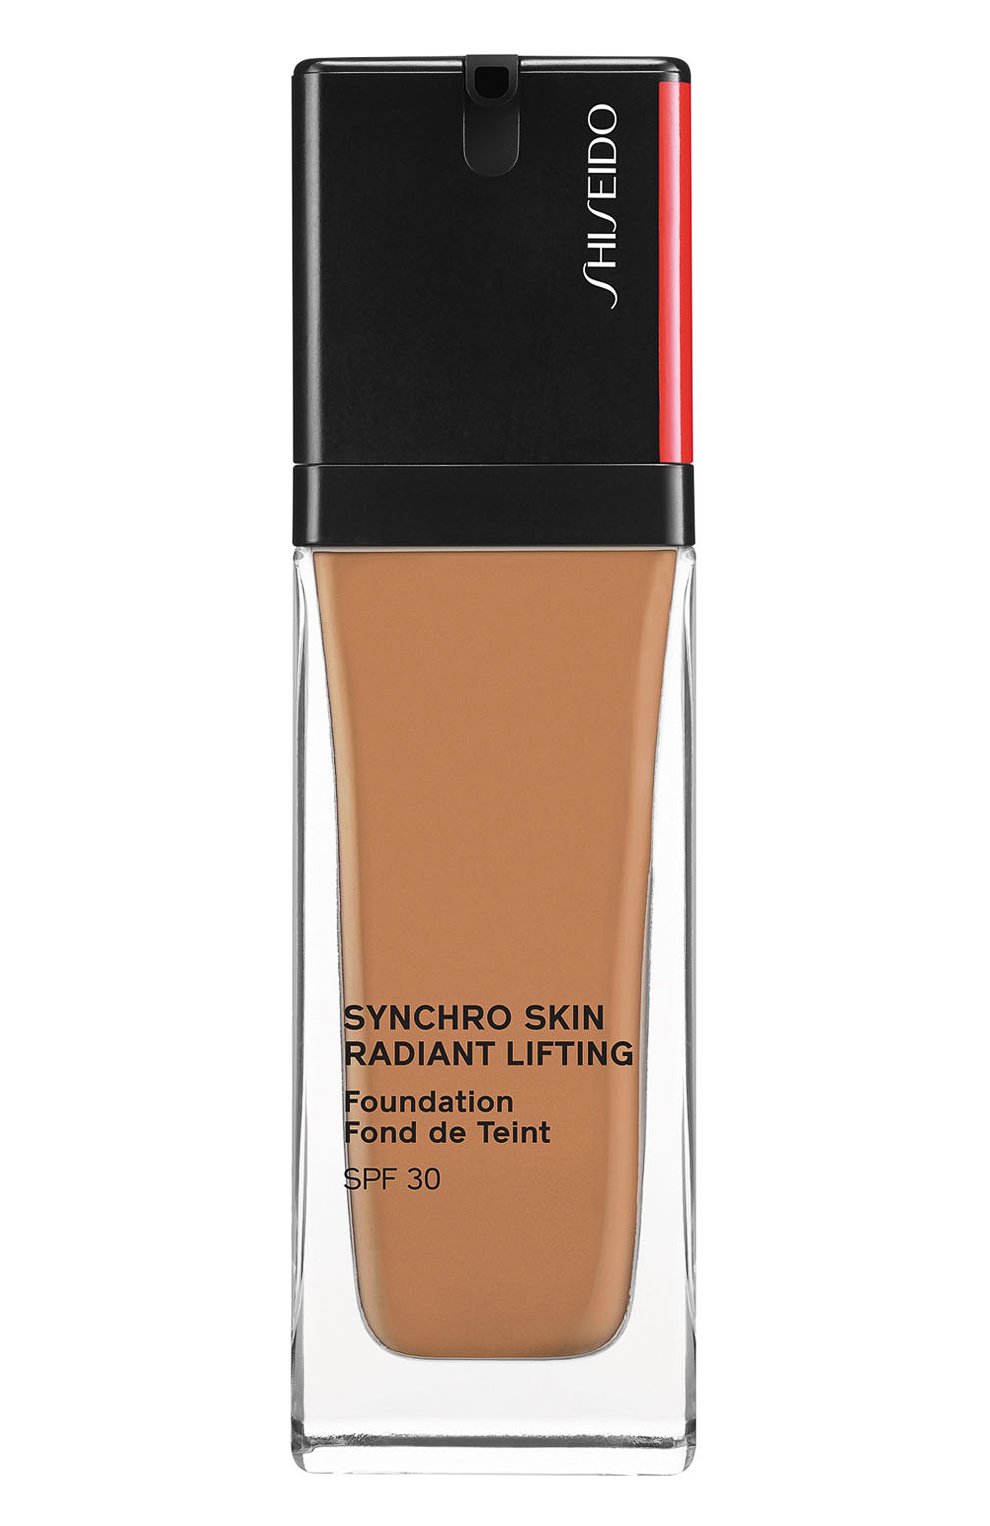 Шисейдо тональный крем с эффектом сияния. Shiseido. Radiant Lifting Foundation тон 240. Shiseido Synchro Skin Radiant Lifting Foundation цвета. Палитра Shiseido Synchro Skin Radiant Lifting Foundation SPF 30.